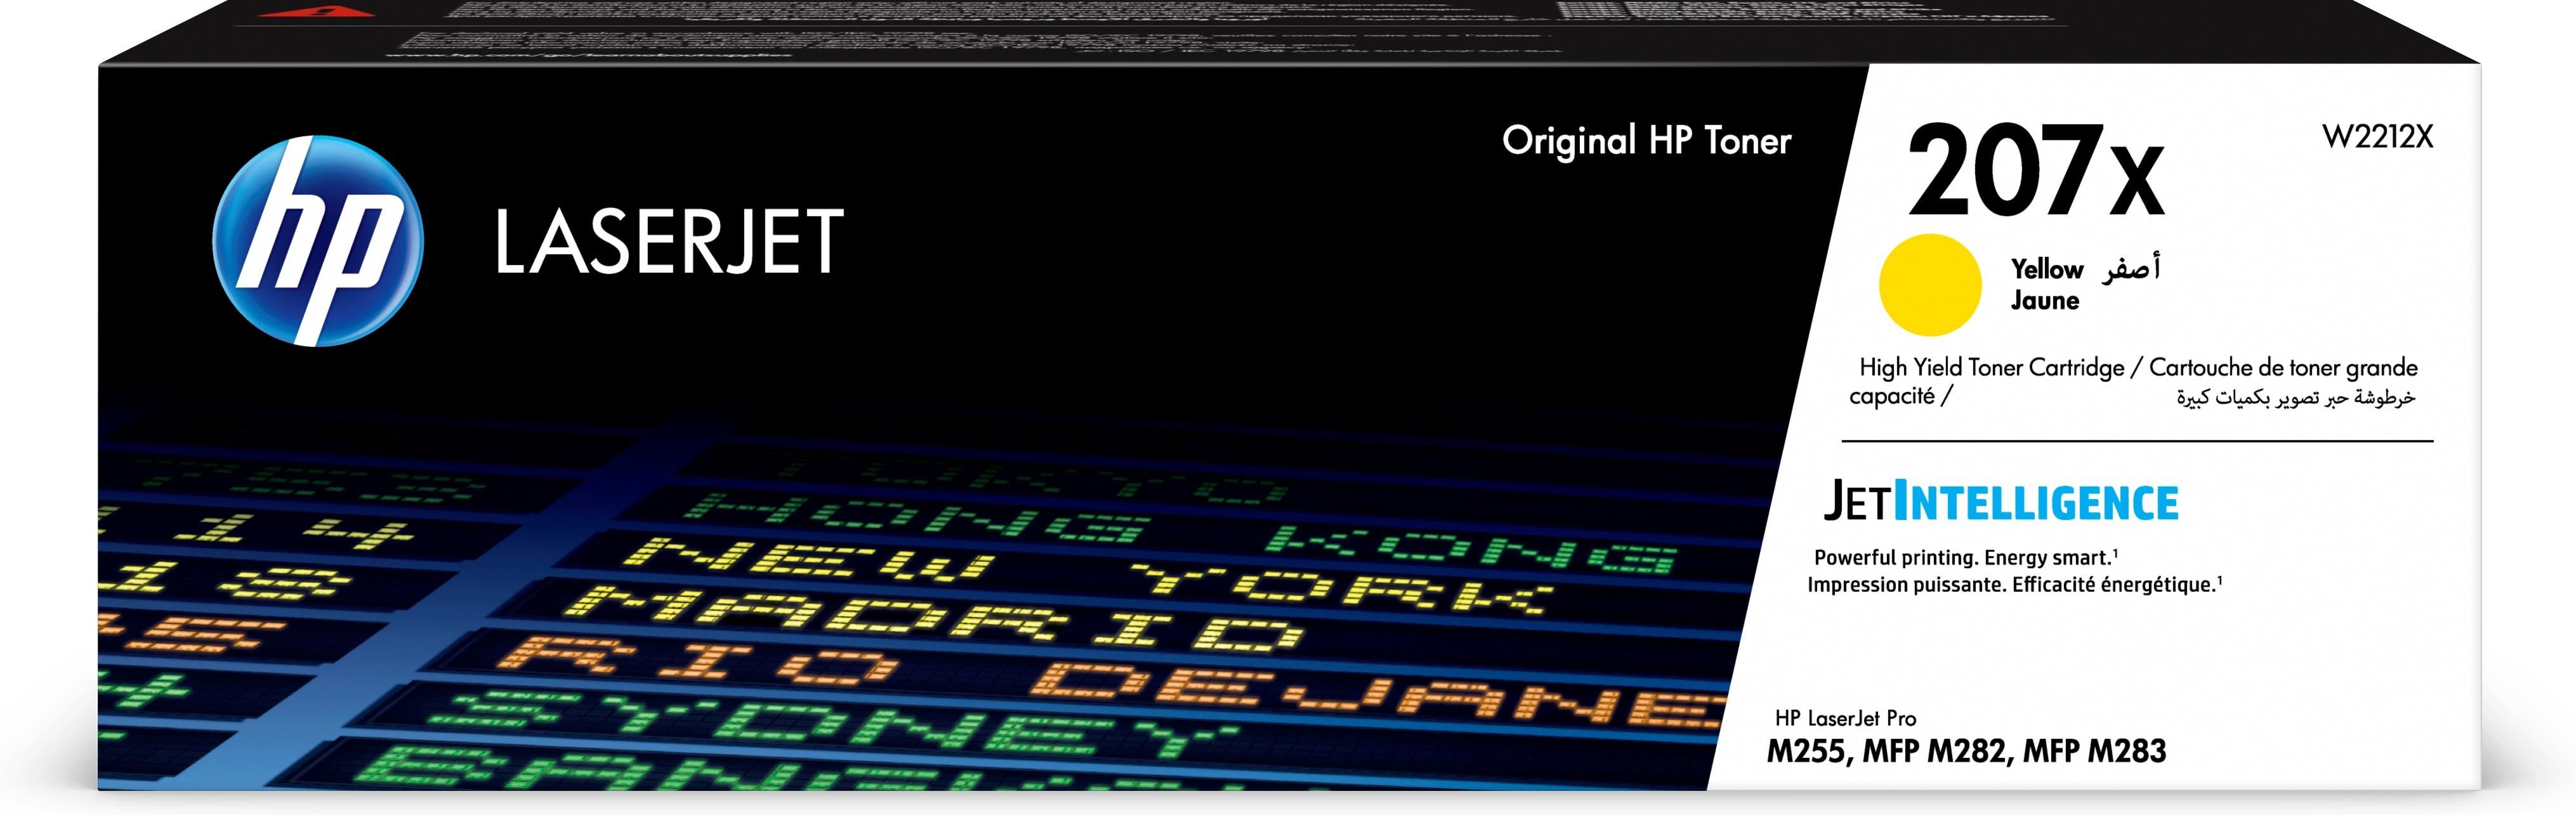 HP 207x Toner Originale